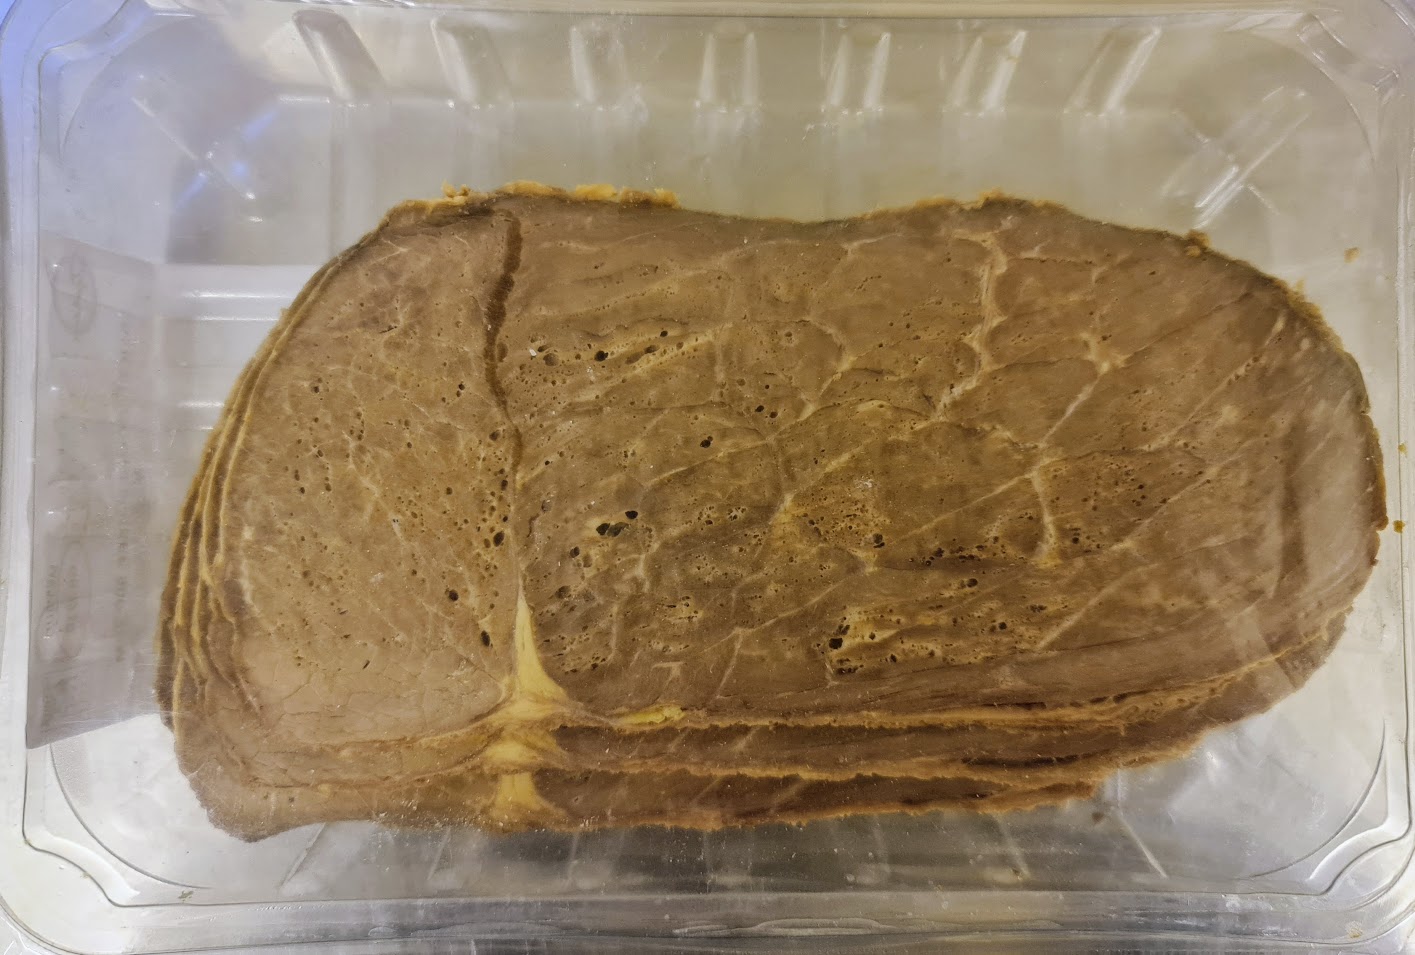 Sliced Silverside of Roast Beef 100% - 500g pack